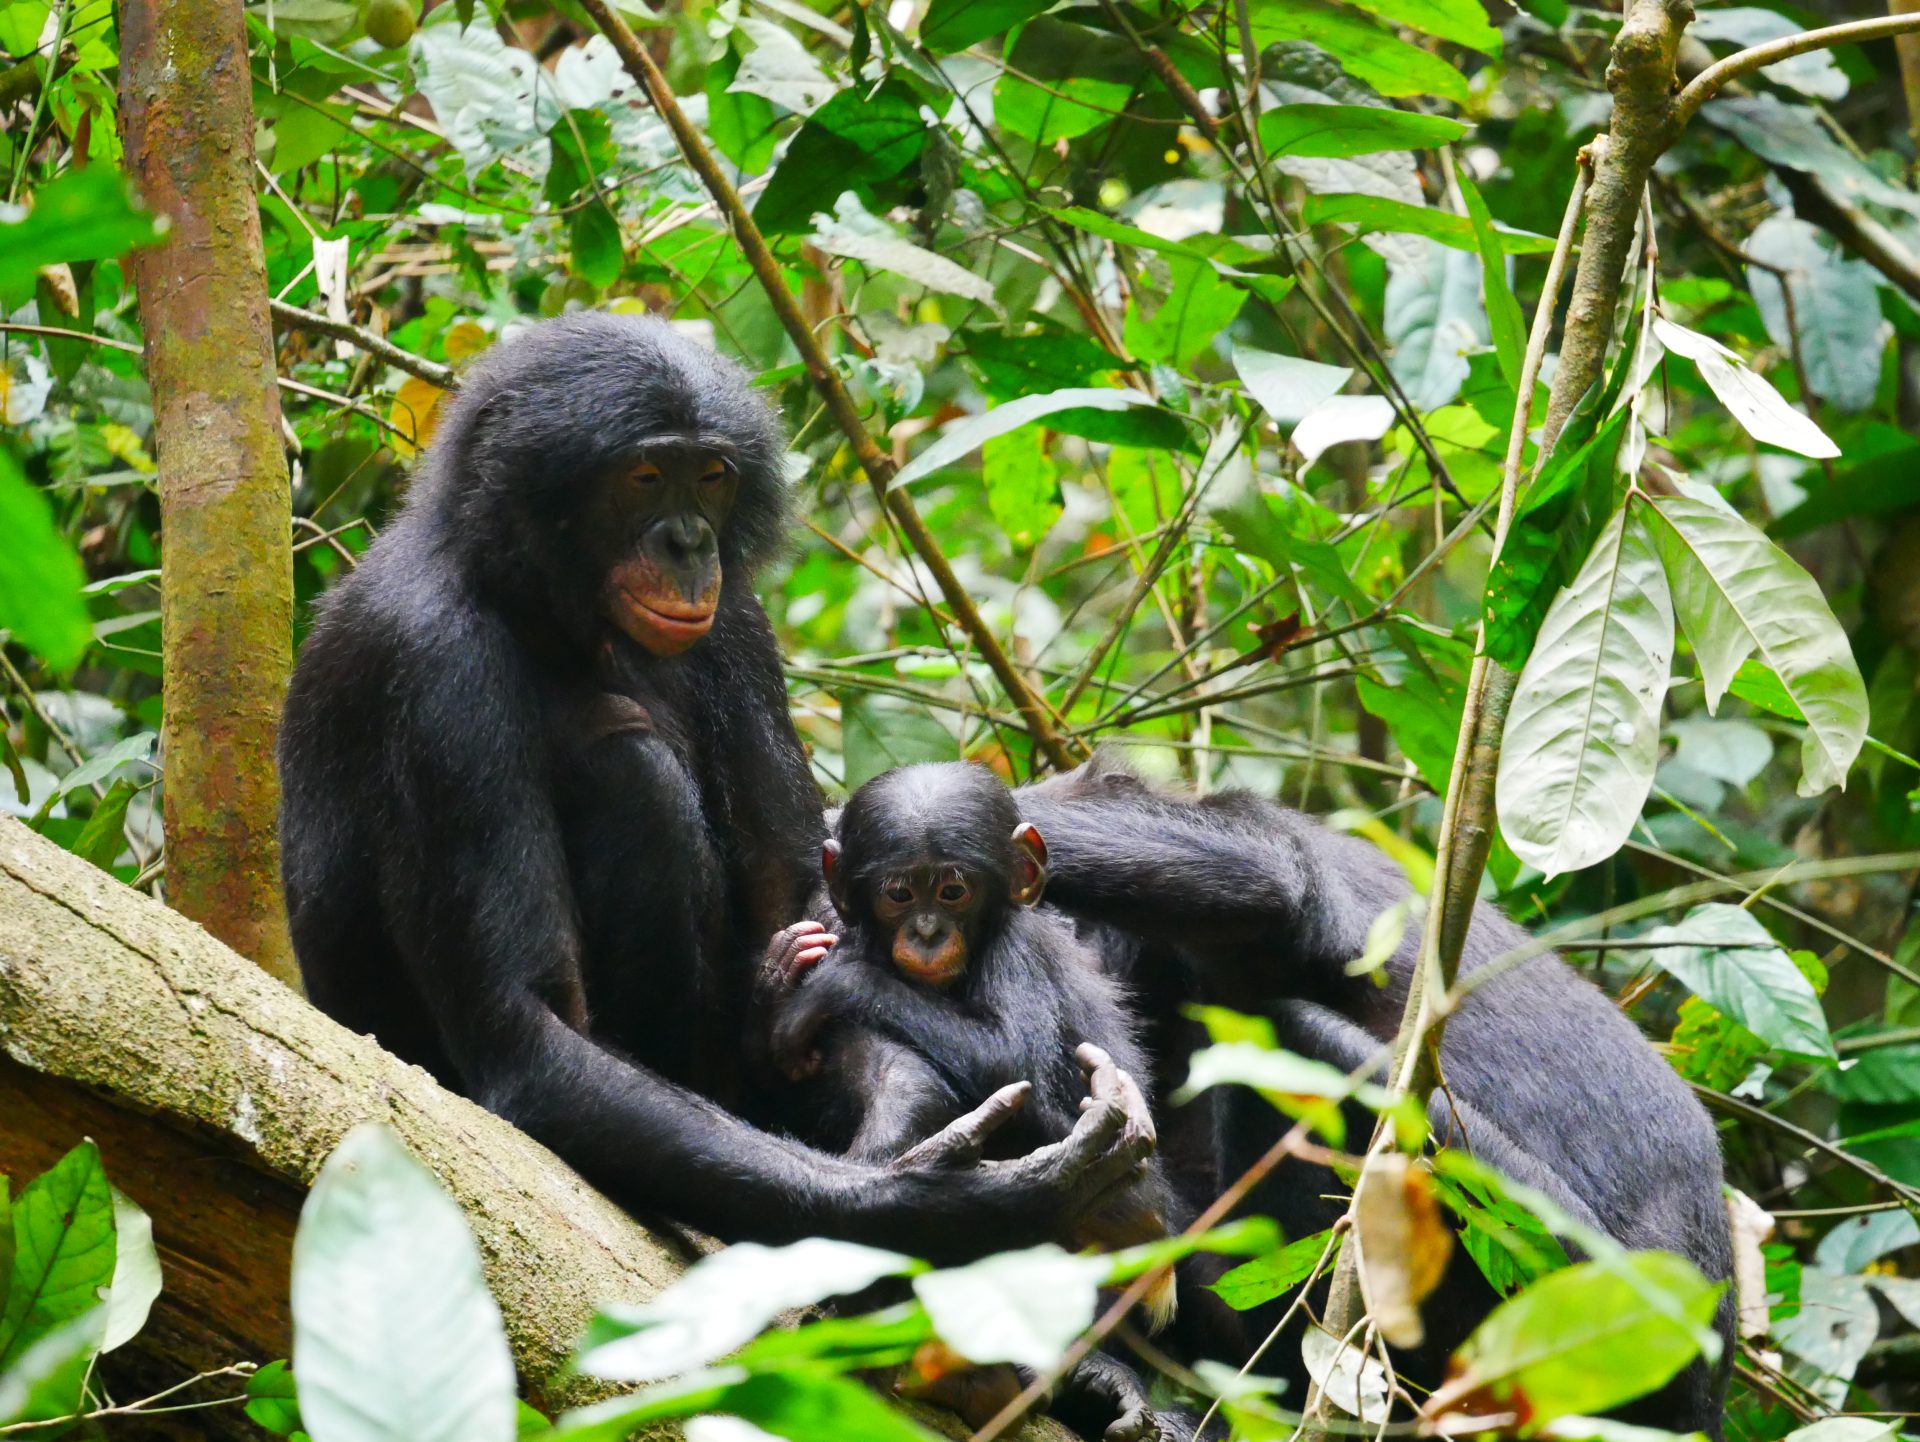 Fotografía de bonobos en Kokolopori Bonobo Reserve (Democratic Republic of Congo). Fotografía facilitada por Maud Mouginot, investigadora de la Universidad de Boston. EFE